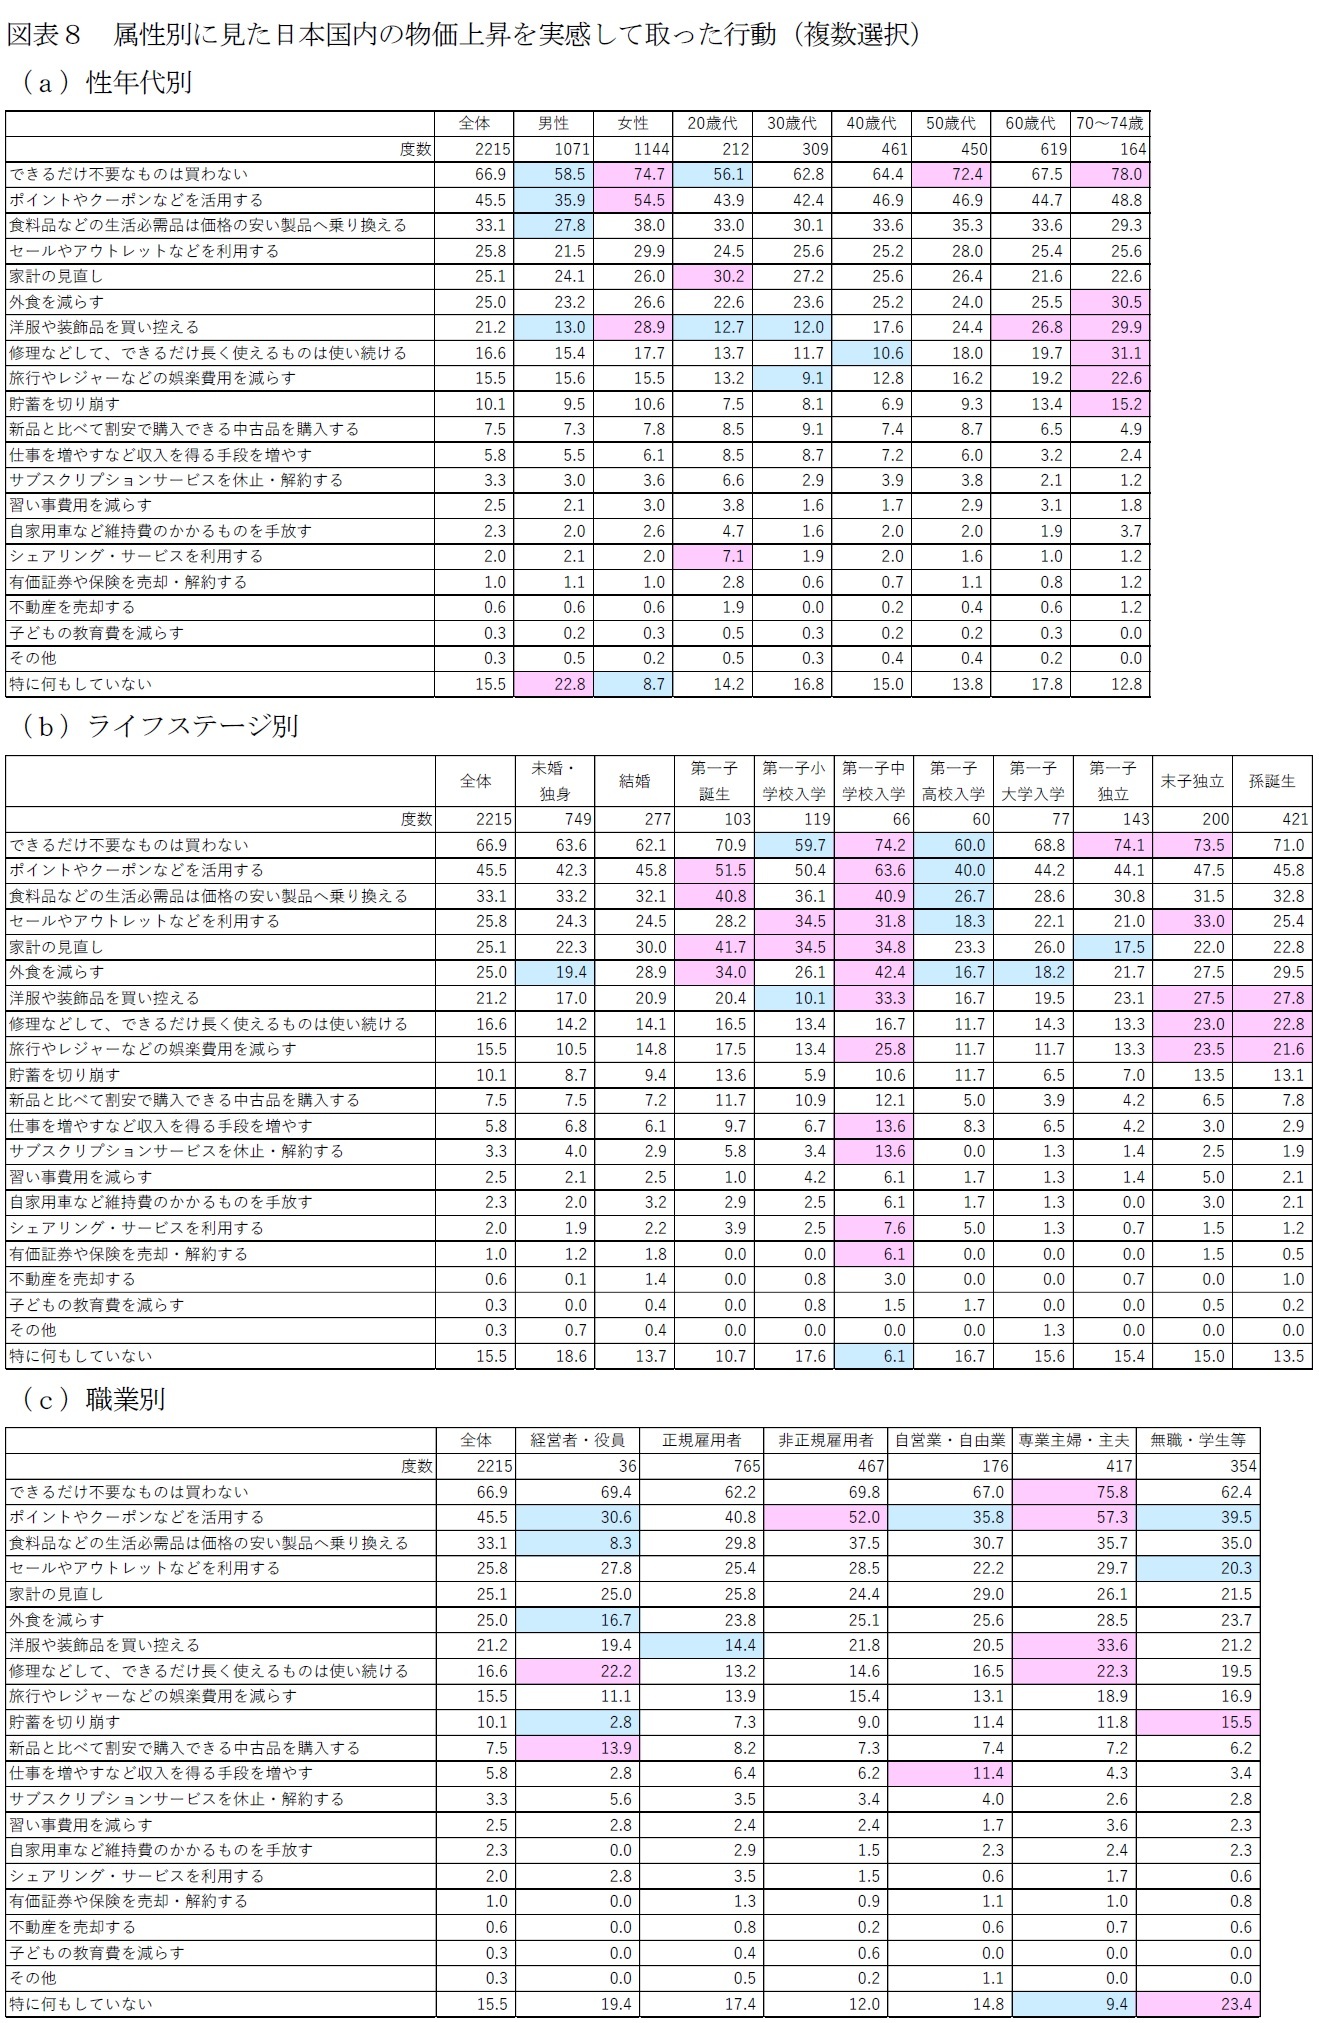 図表８－１　属性別に見た日本国内の物価上昇を実感して取った行動（複数選択）